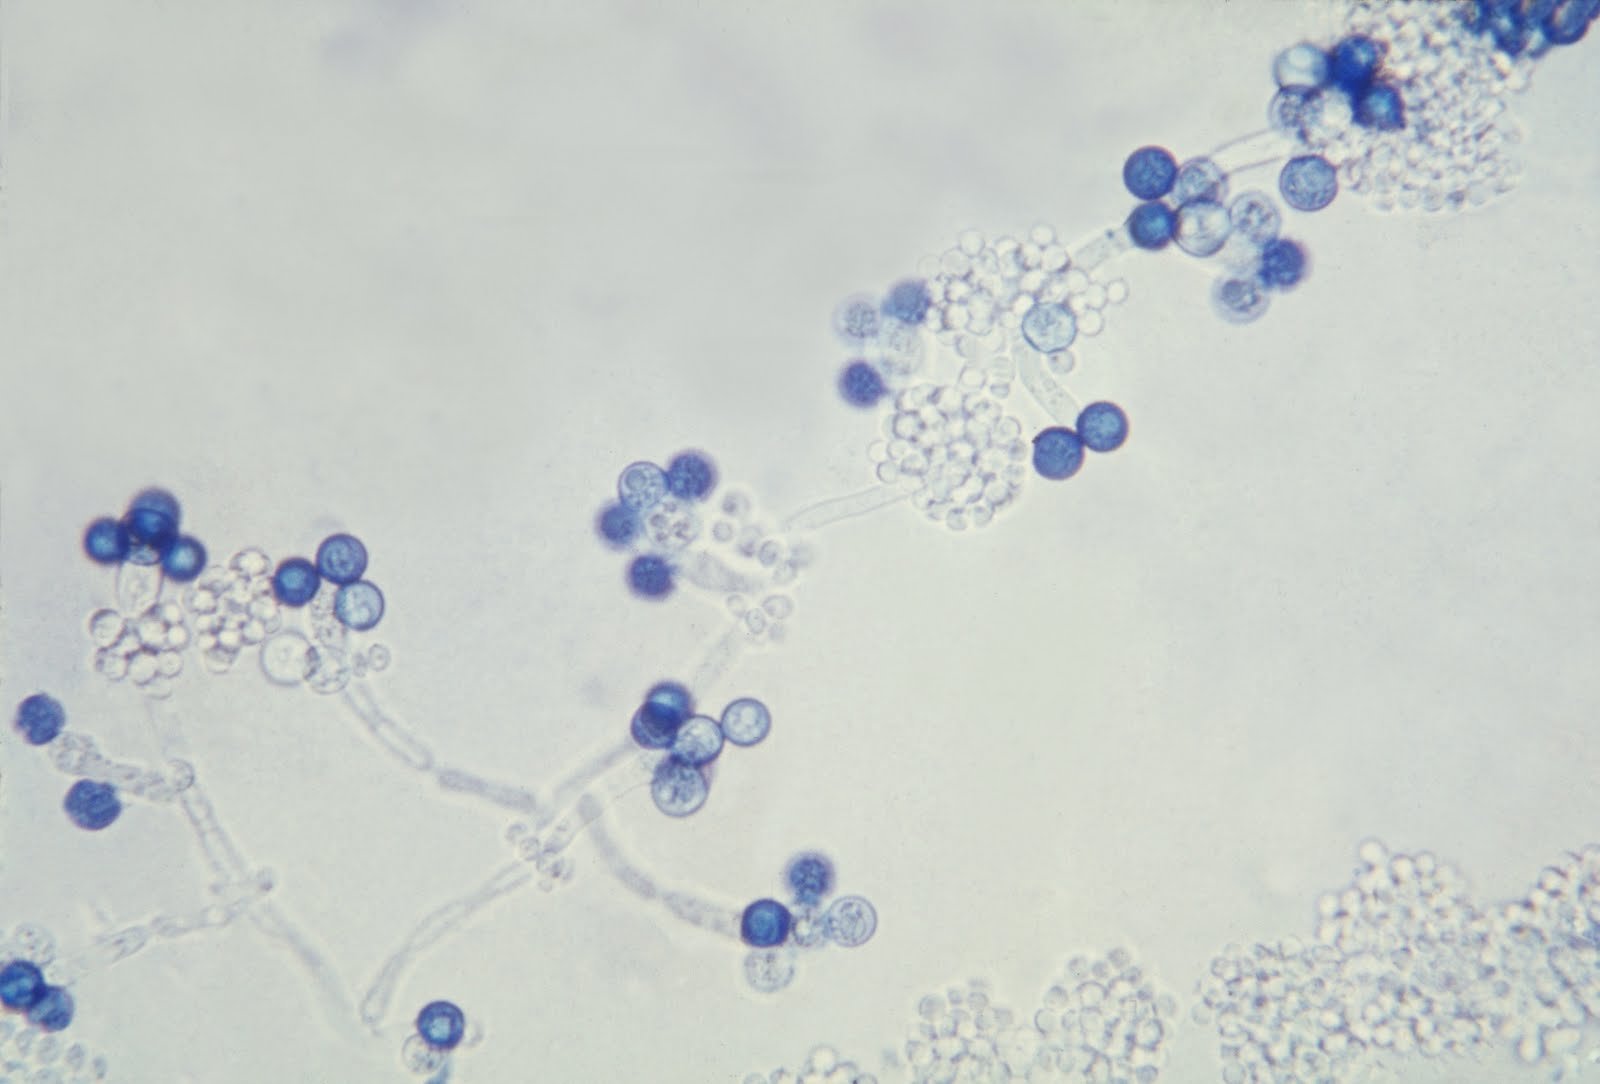 Споры candida. Candida альбиканс. Грибы кандида альбиканс микроскопия. Кандида альбиканс под микроскопом. Хламидоспоры кандида.